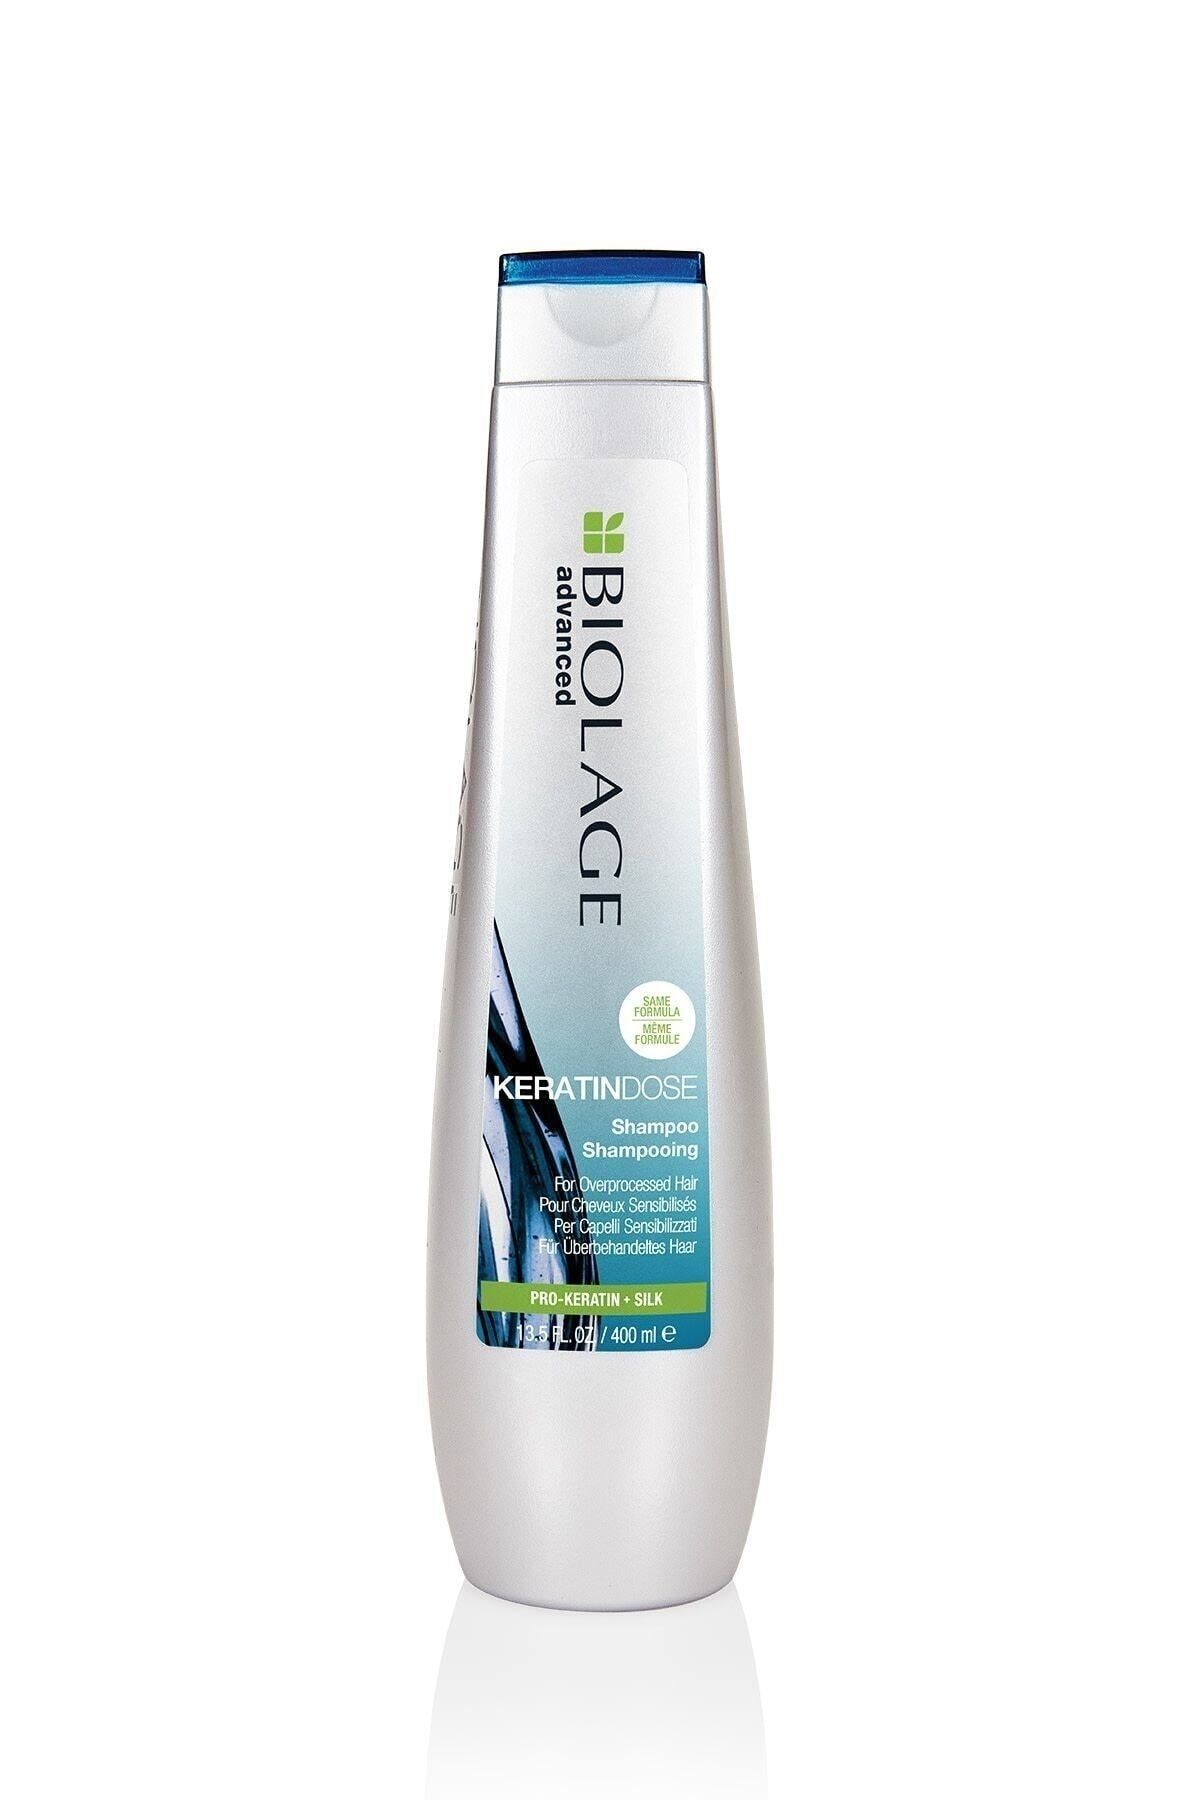 Biolage Keratindose Çok Yıpranmış Saçlar Için Pro-keratin Özlü Yenileyici Bakım Şampuanı 400 ml